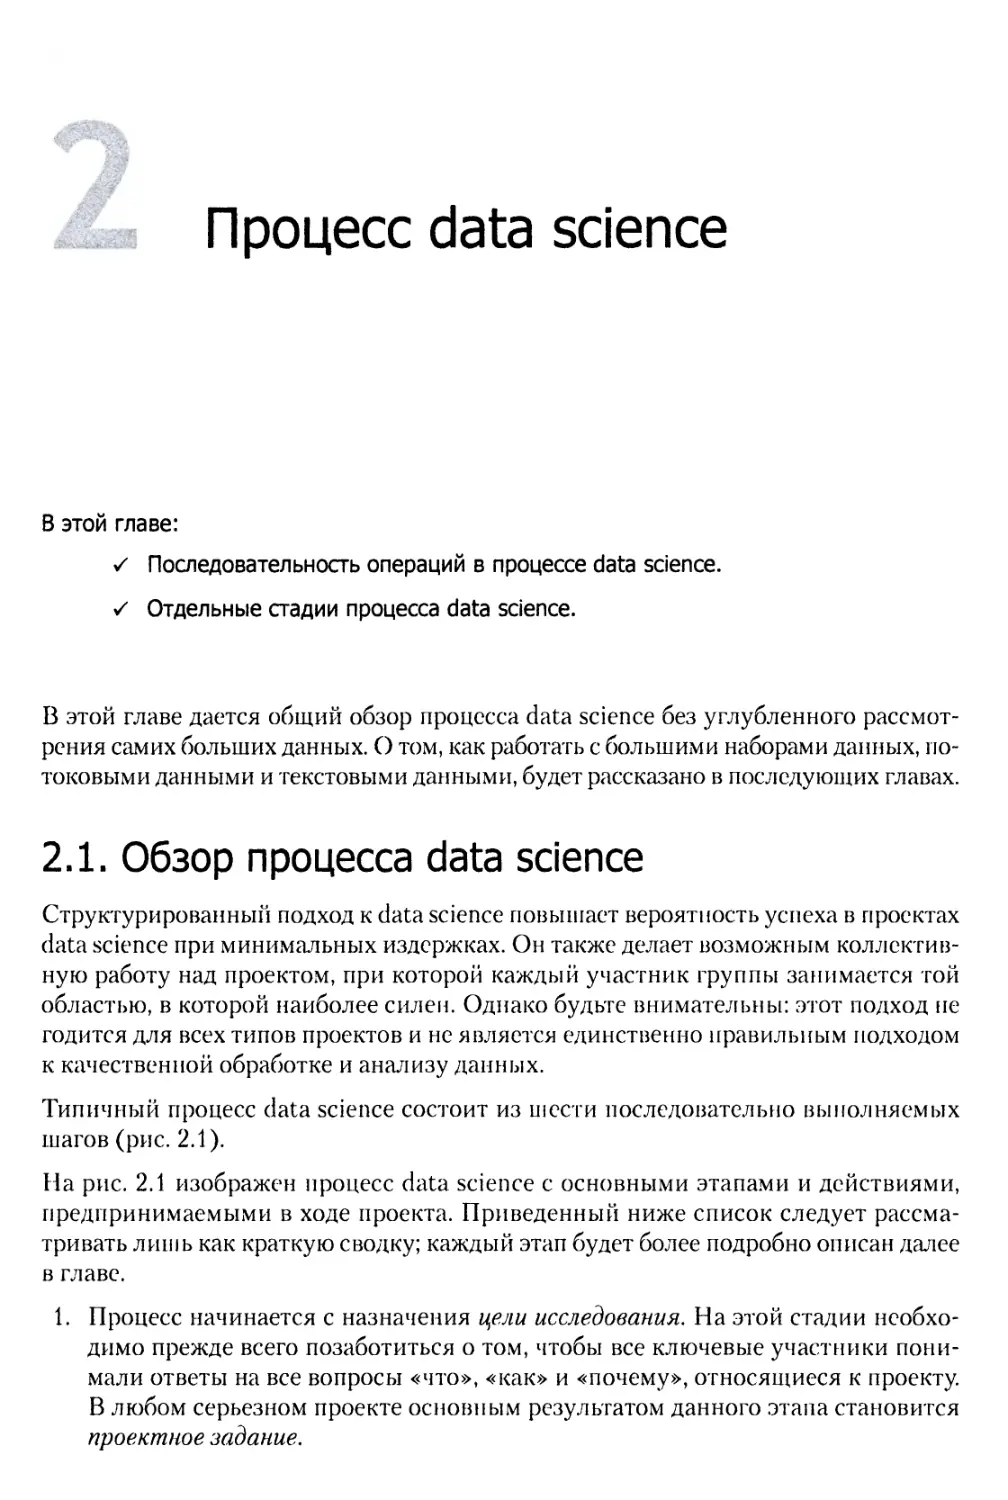 2. Процесс data science